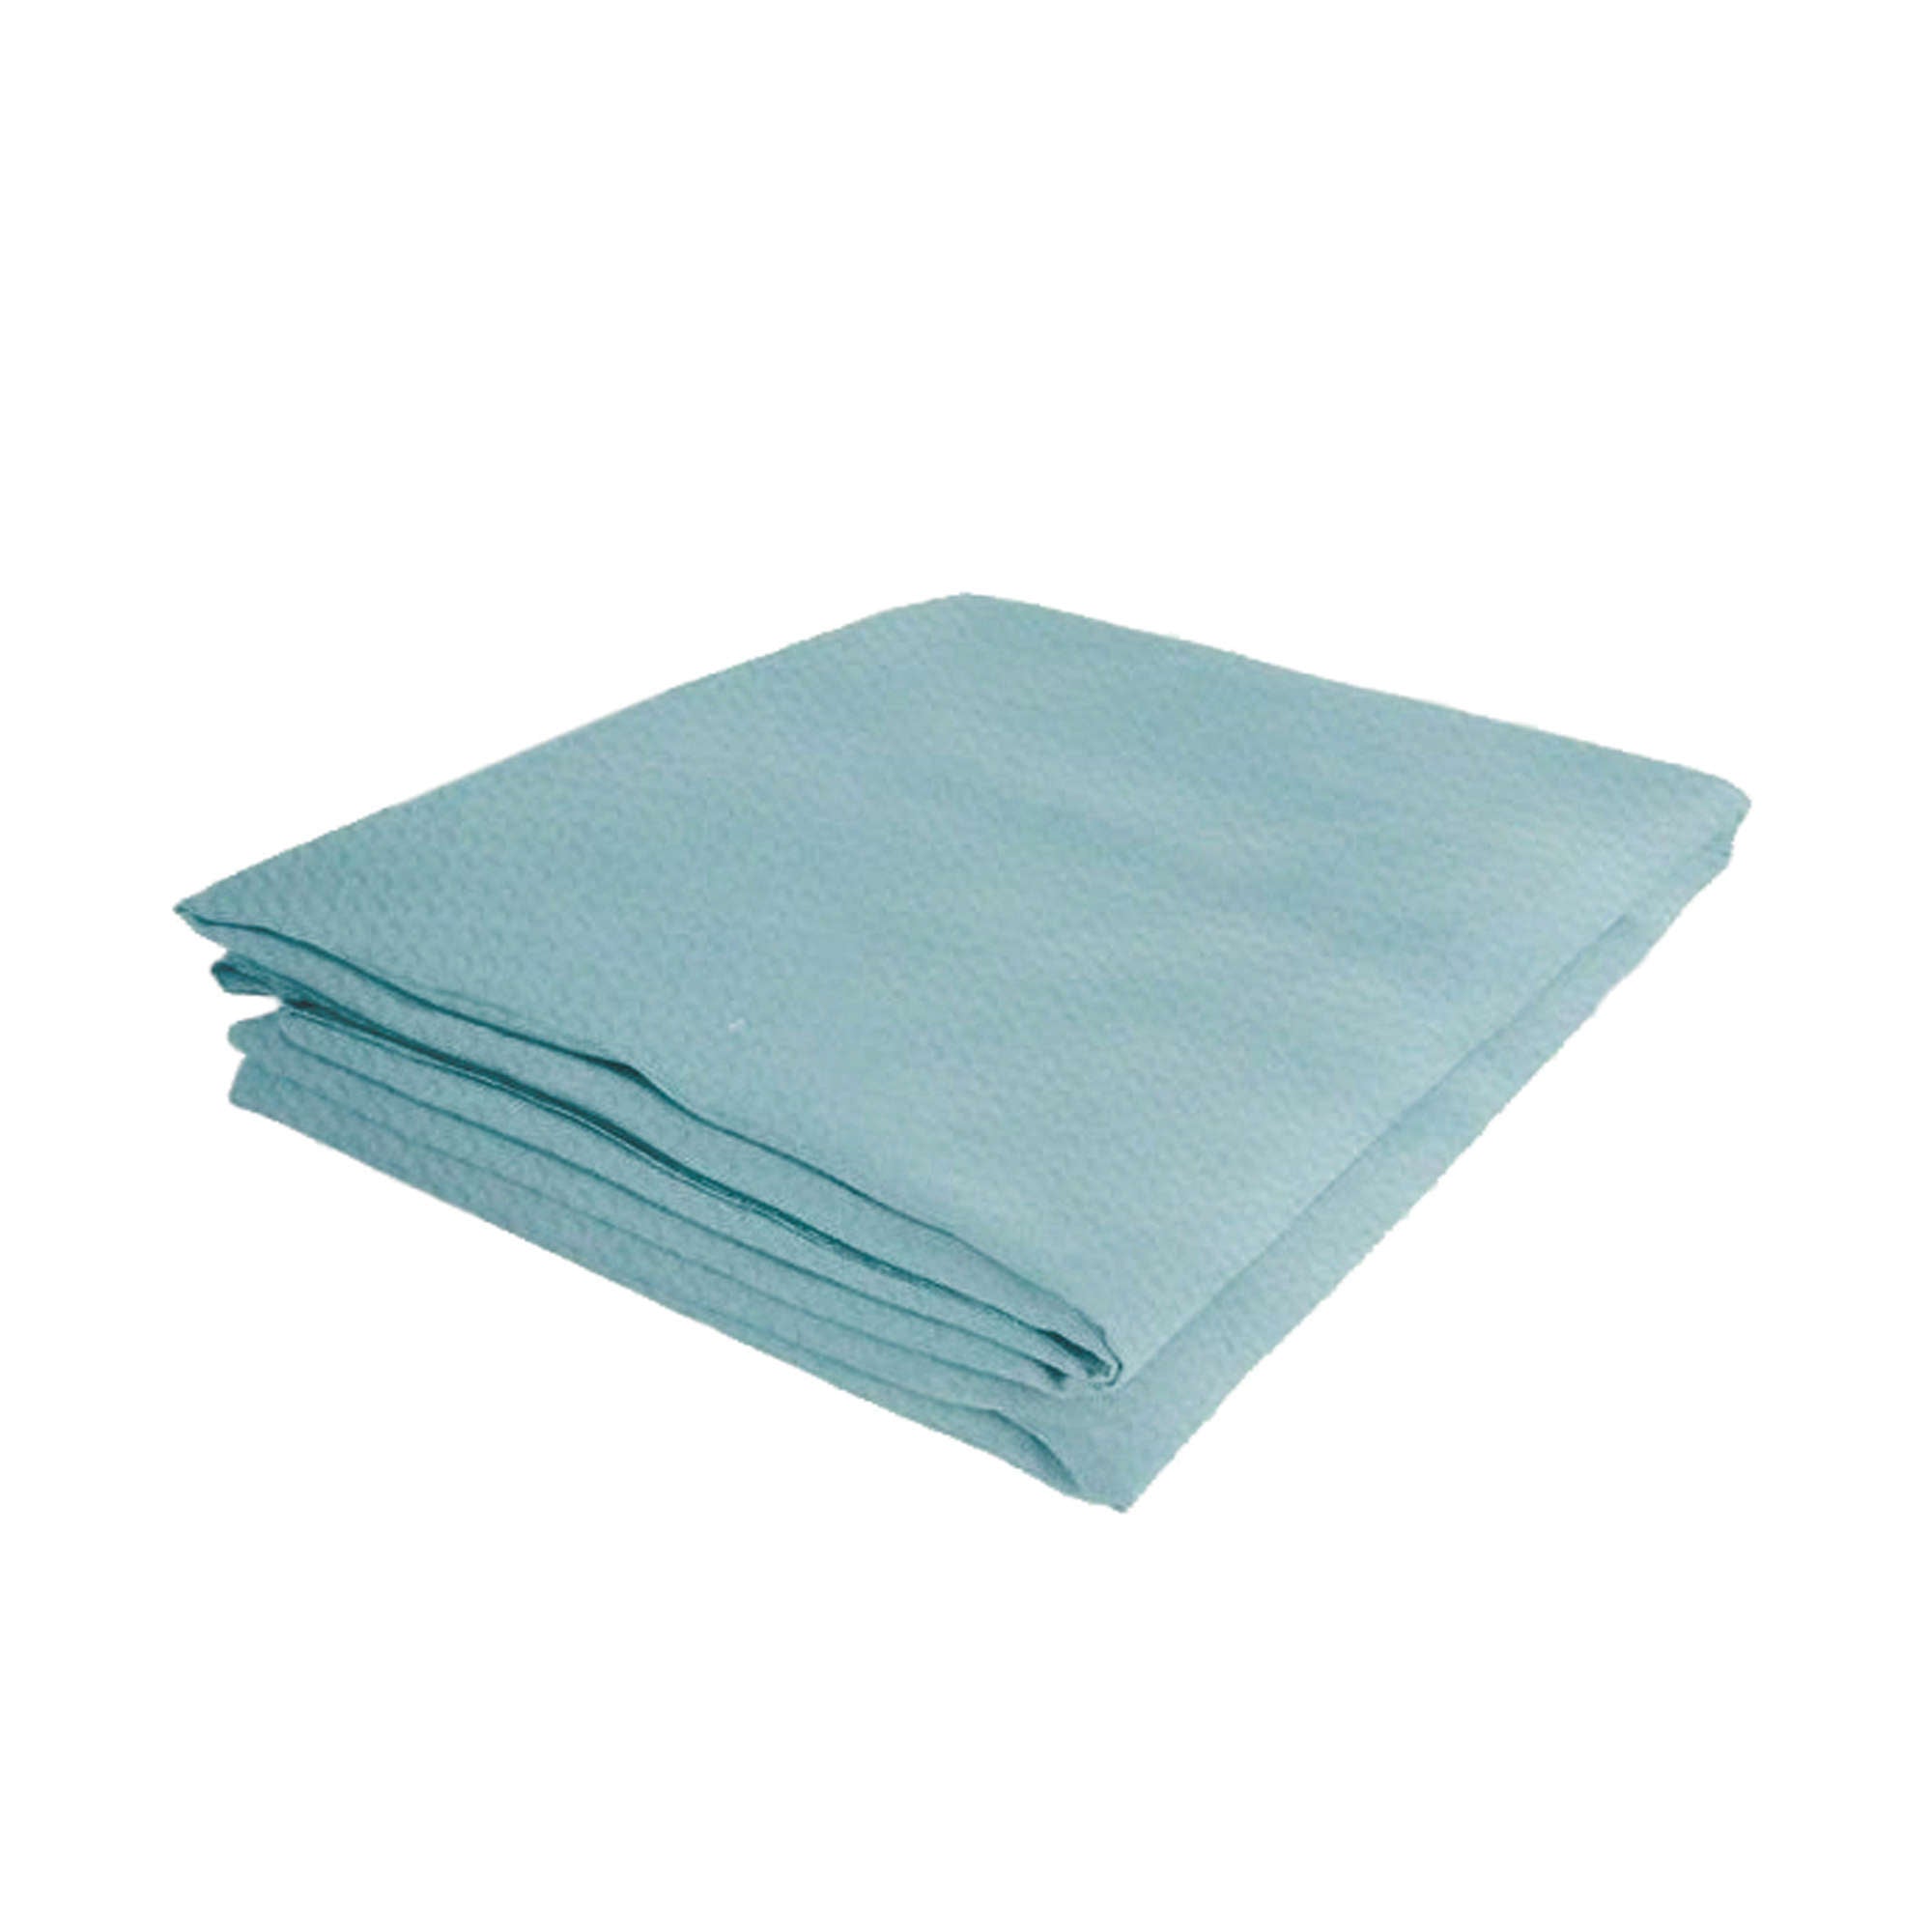 Cama montessori 70x140 cm para bebés con textil azul marino HOMY